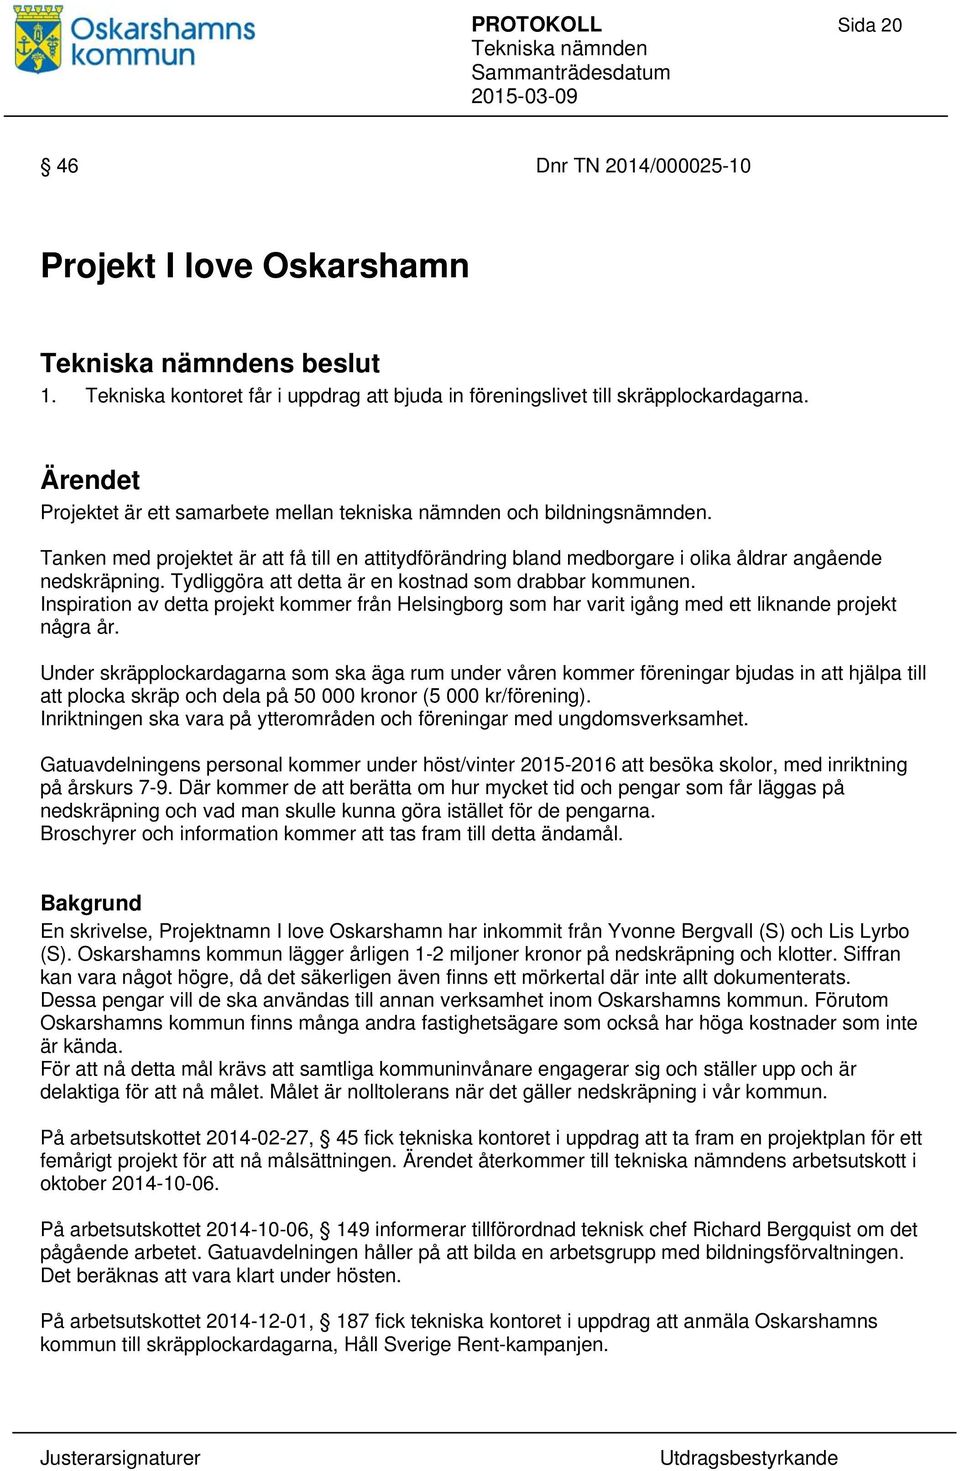 Tydliggöra att detta är en kostnad som drabbar kommunen. Inspiration av detta projekt kommer från Helsingborg som har varit igång med ett liknande projekt några år.